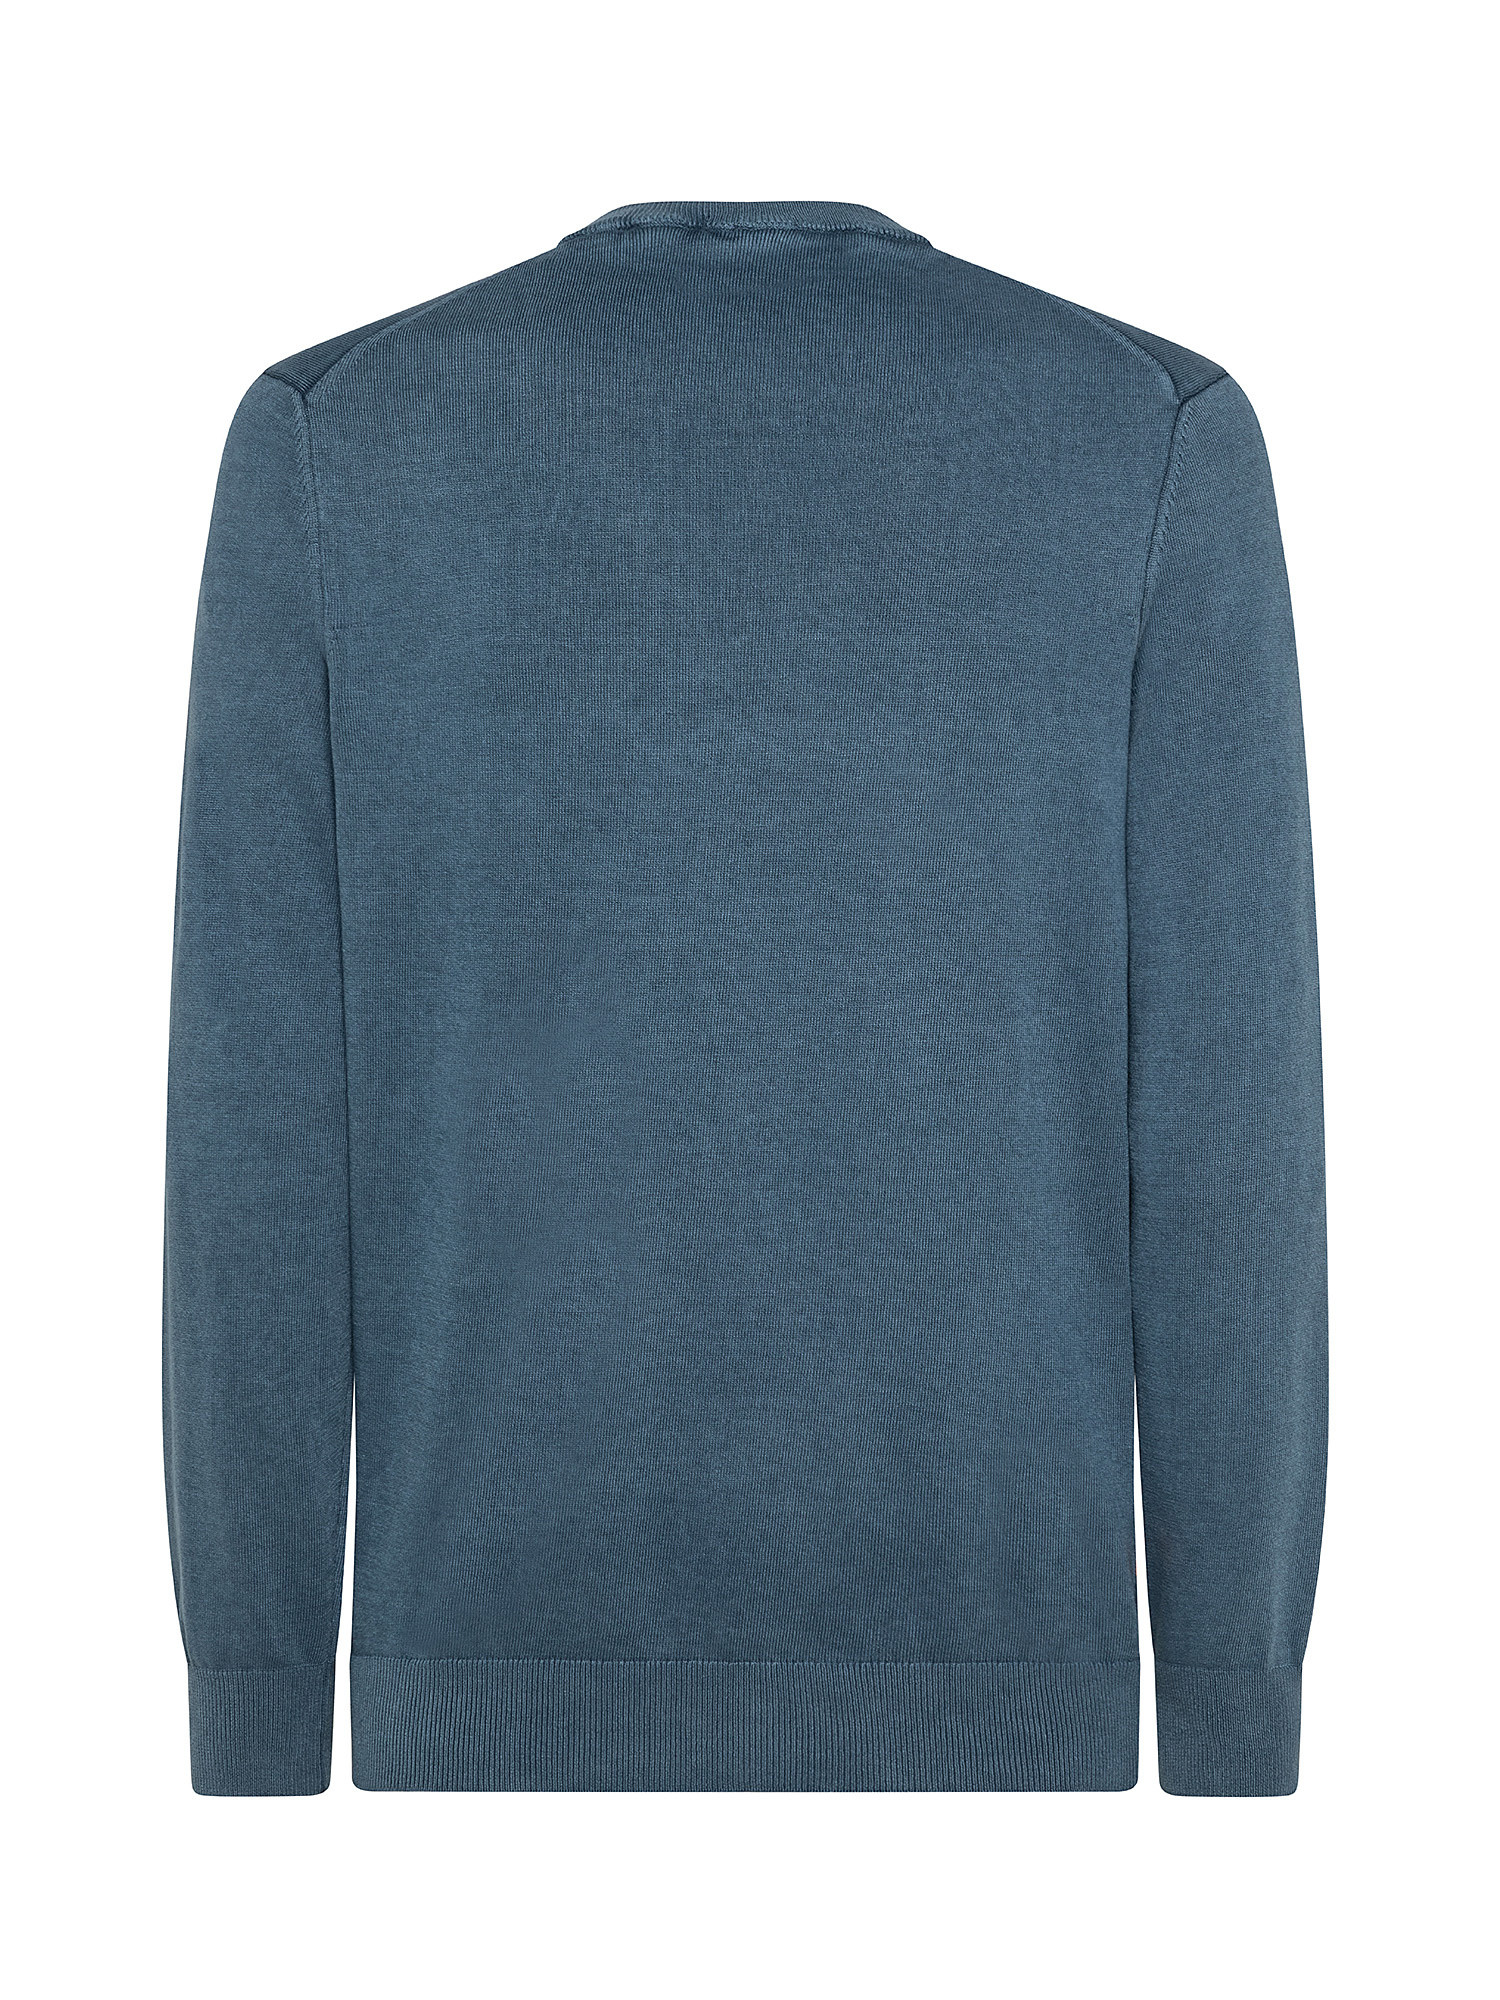 EK + Men's Lightweight Sweater, Blue, large image number 1